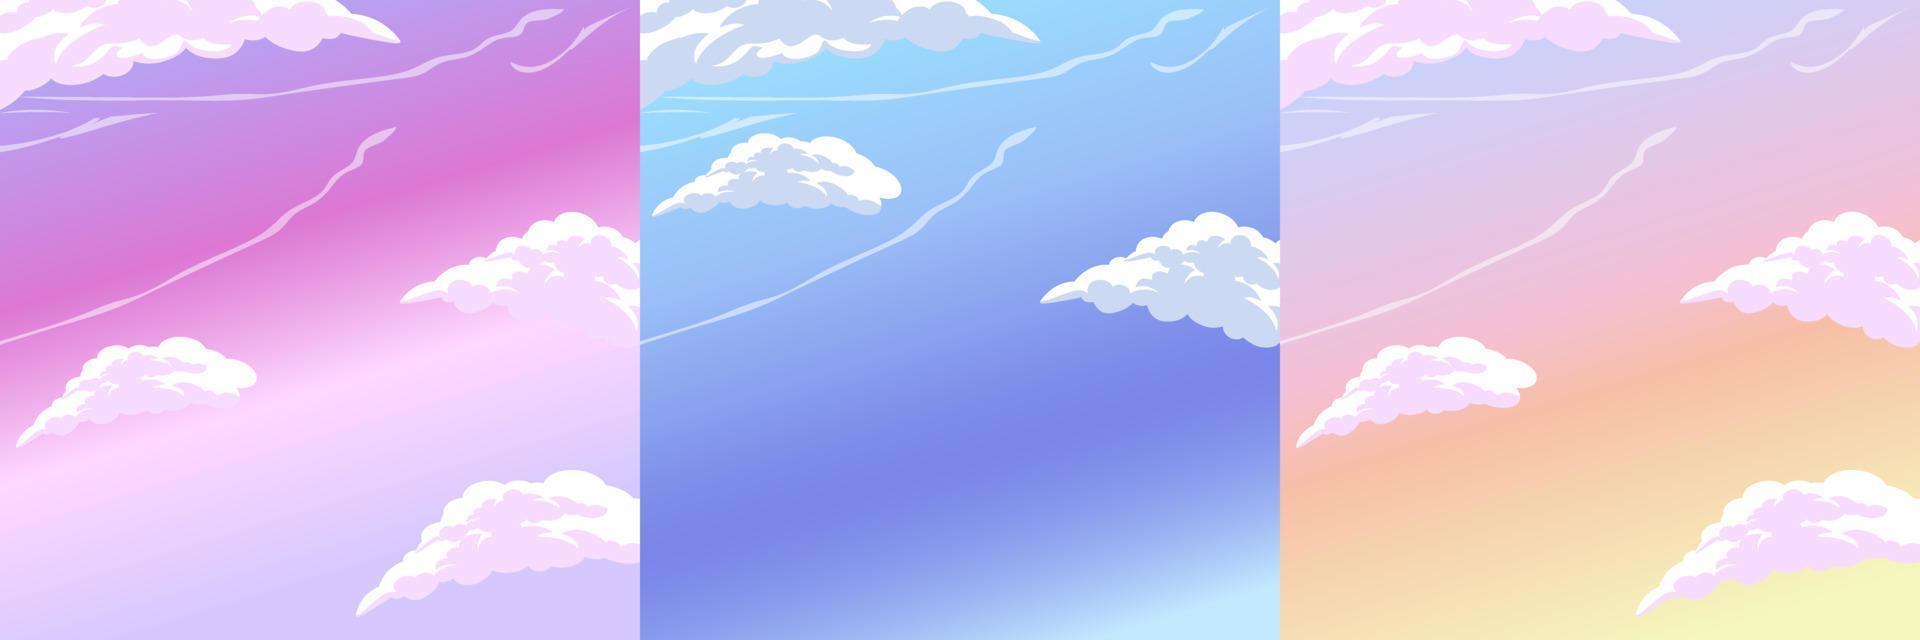 sfondo del cielo con le nuvole. vettore